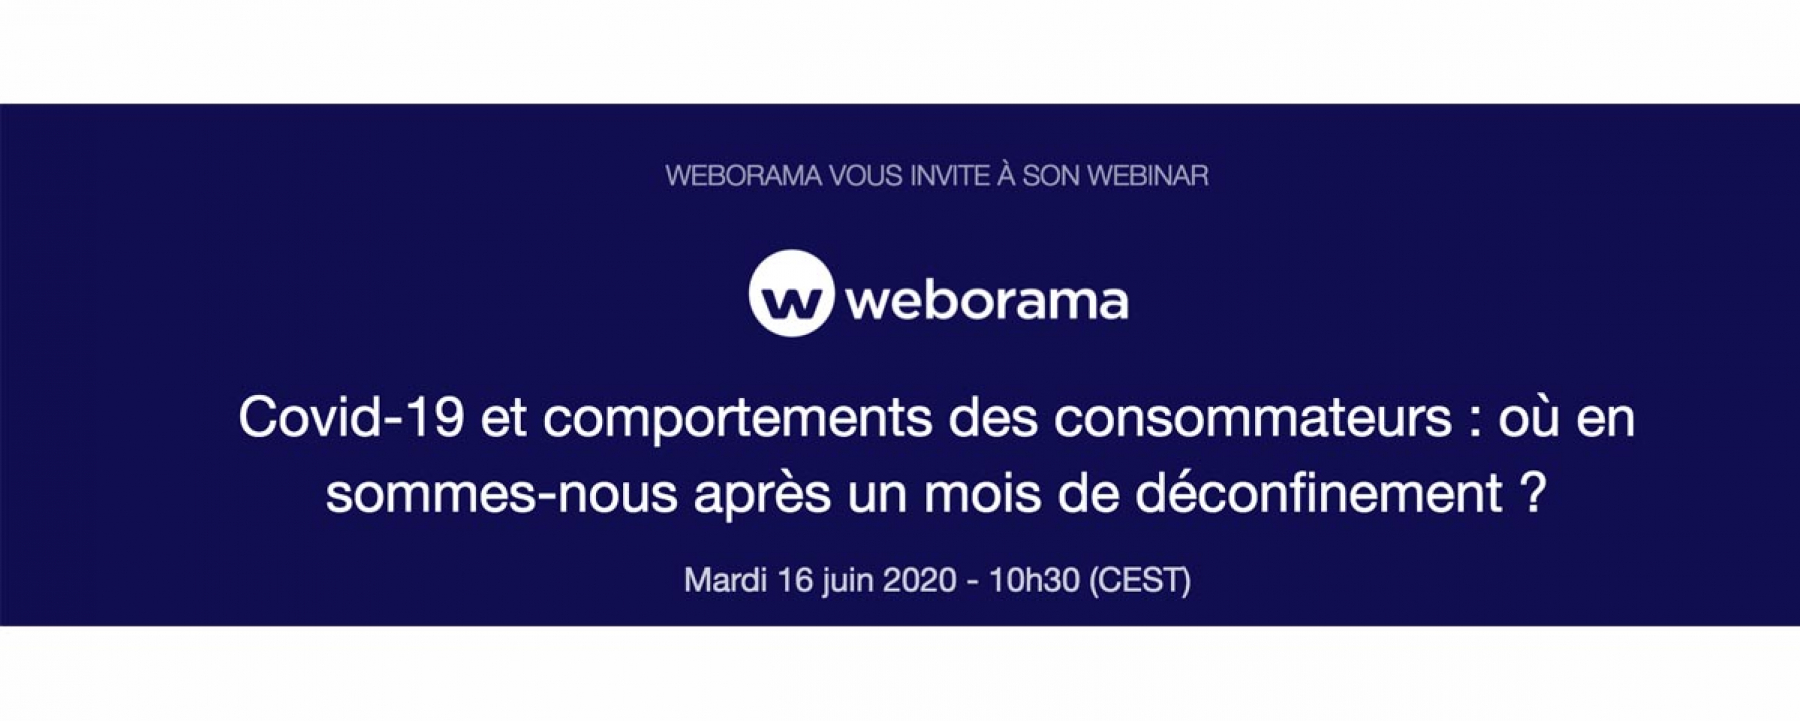 Webinar Covid-19 et comportements des consommateurs : où en sommes-nous après un mois de déconfinement ?, le 16 juin 2020, organisé par Weborama